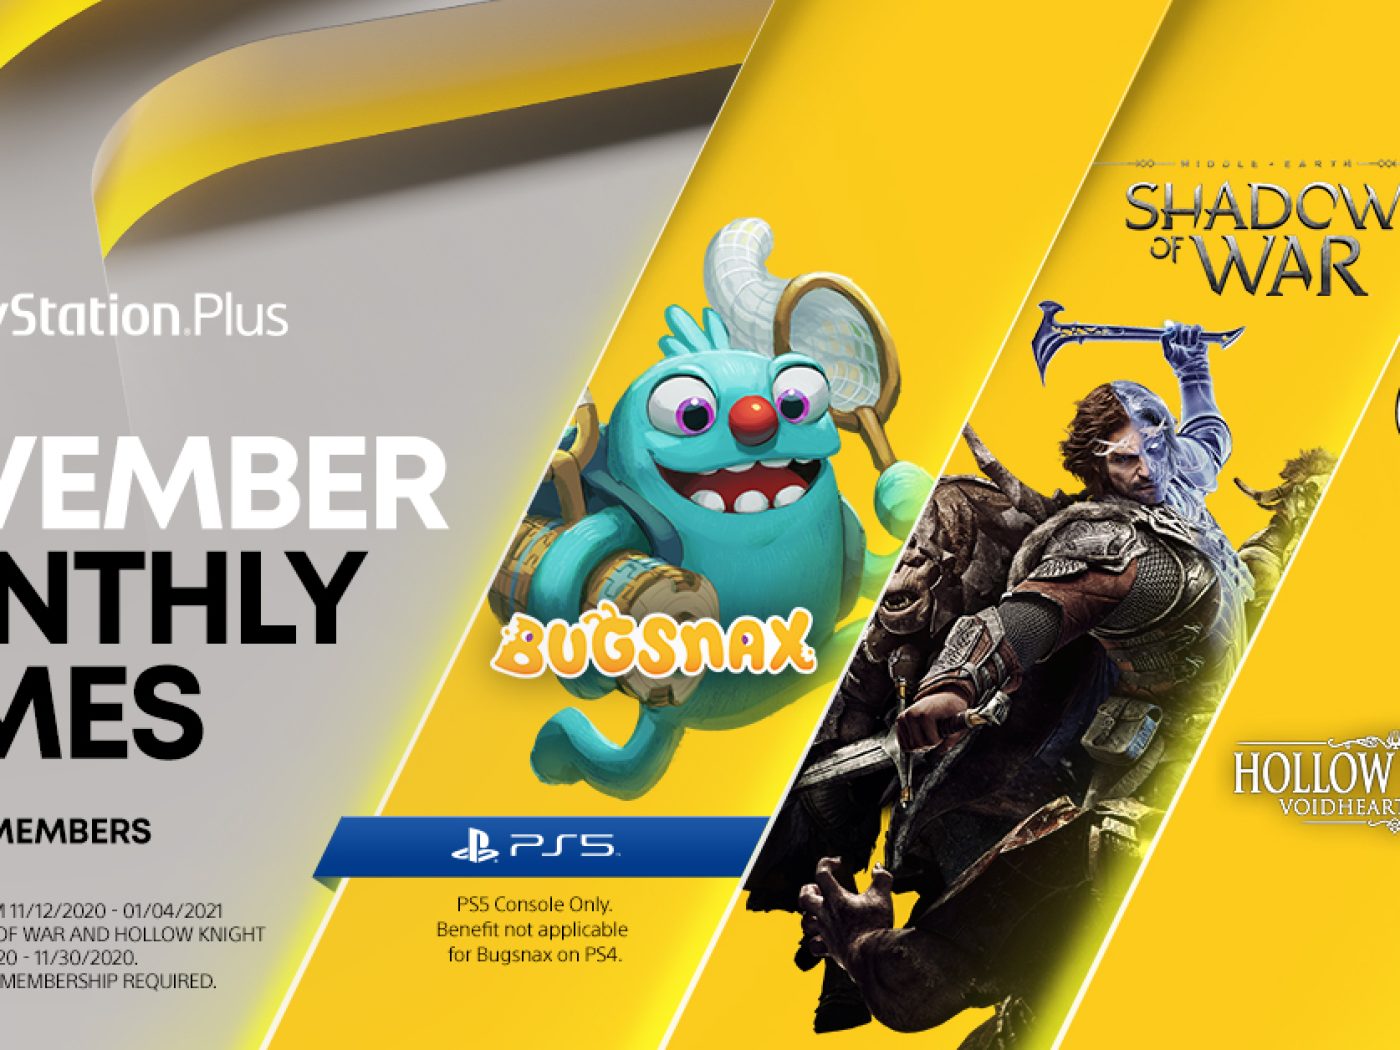 Playstation Plus vai ficar mais cara no Brasil no PS4 e PS5